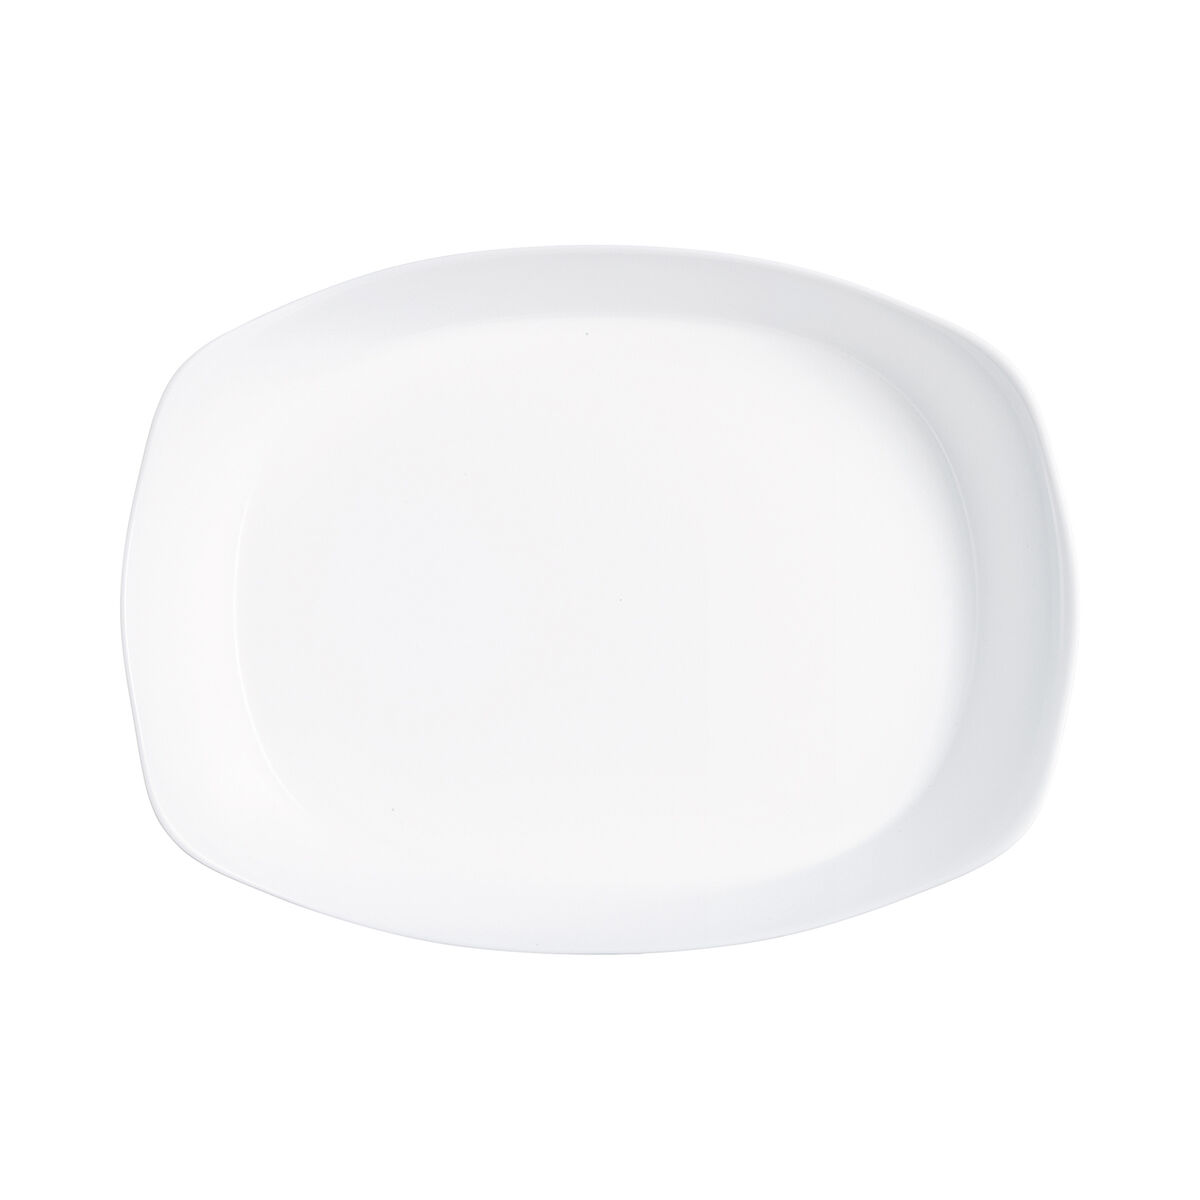 Teglia da Cucina Luminarc Smart Cuisine Rettangolare Bianco Vetro 38 x 27 cm (6 Unità)